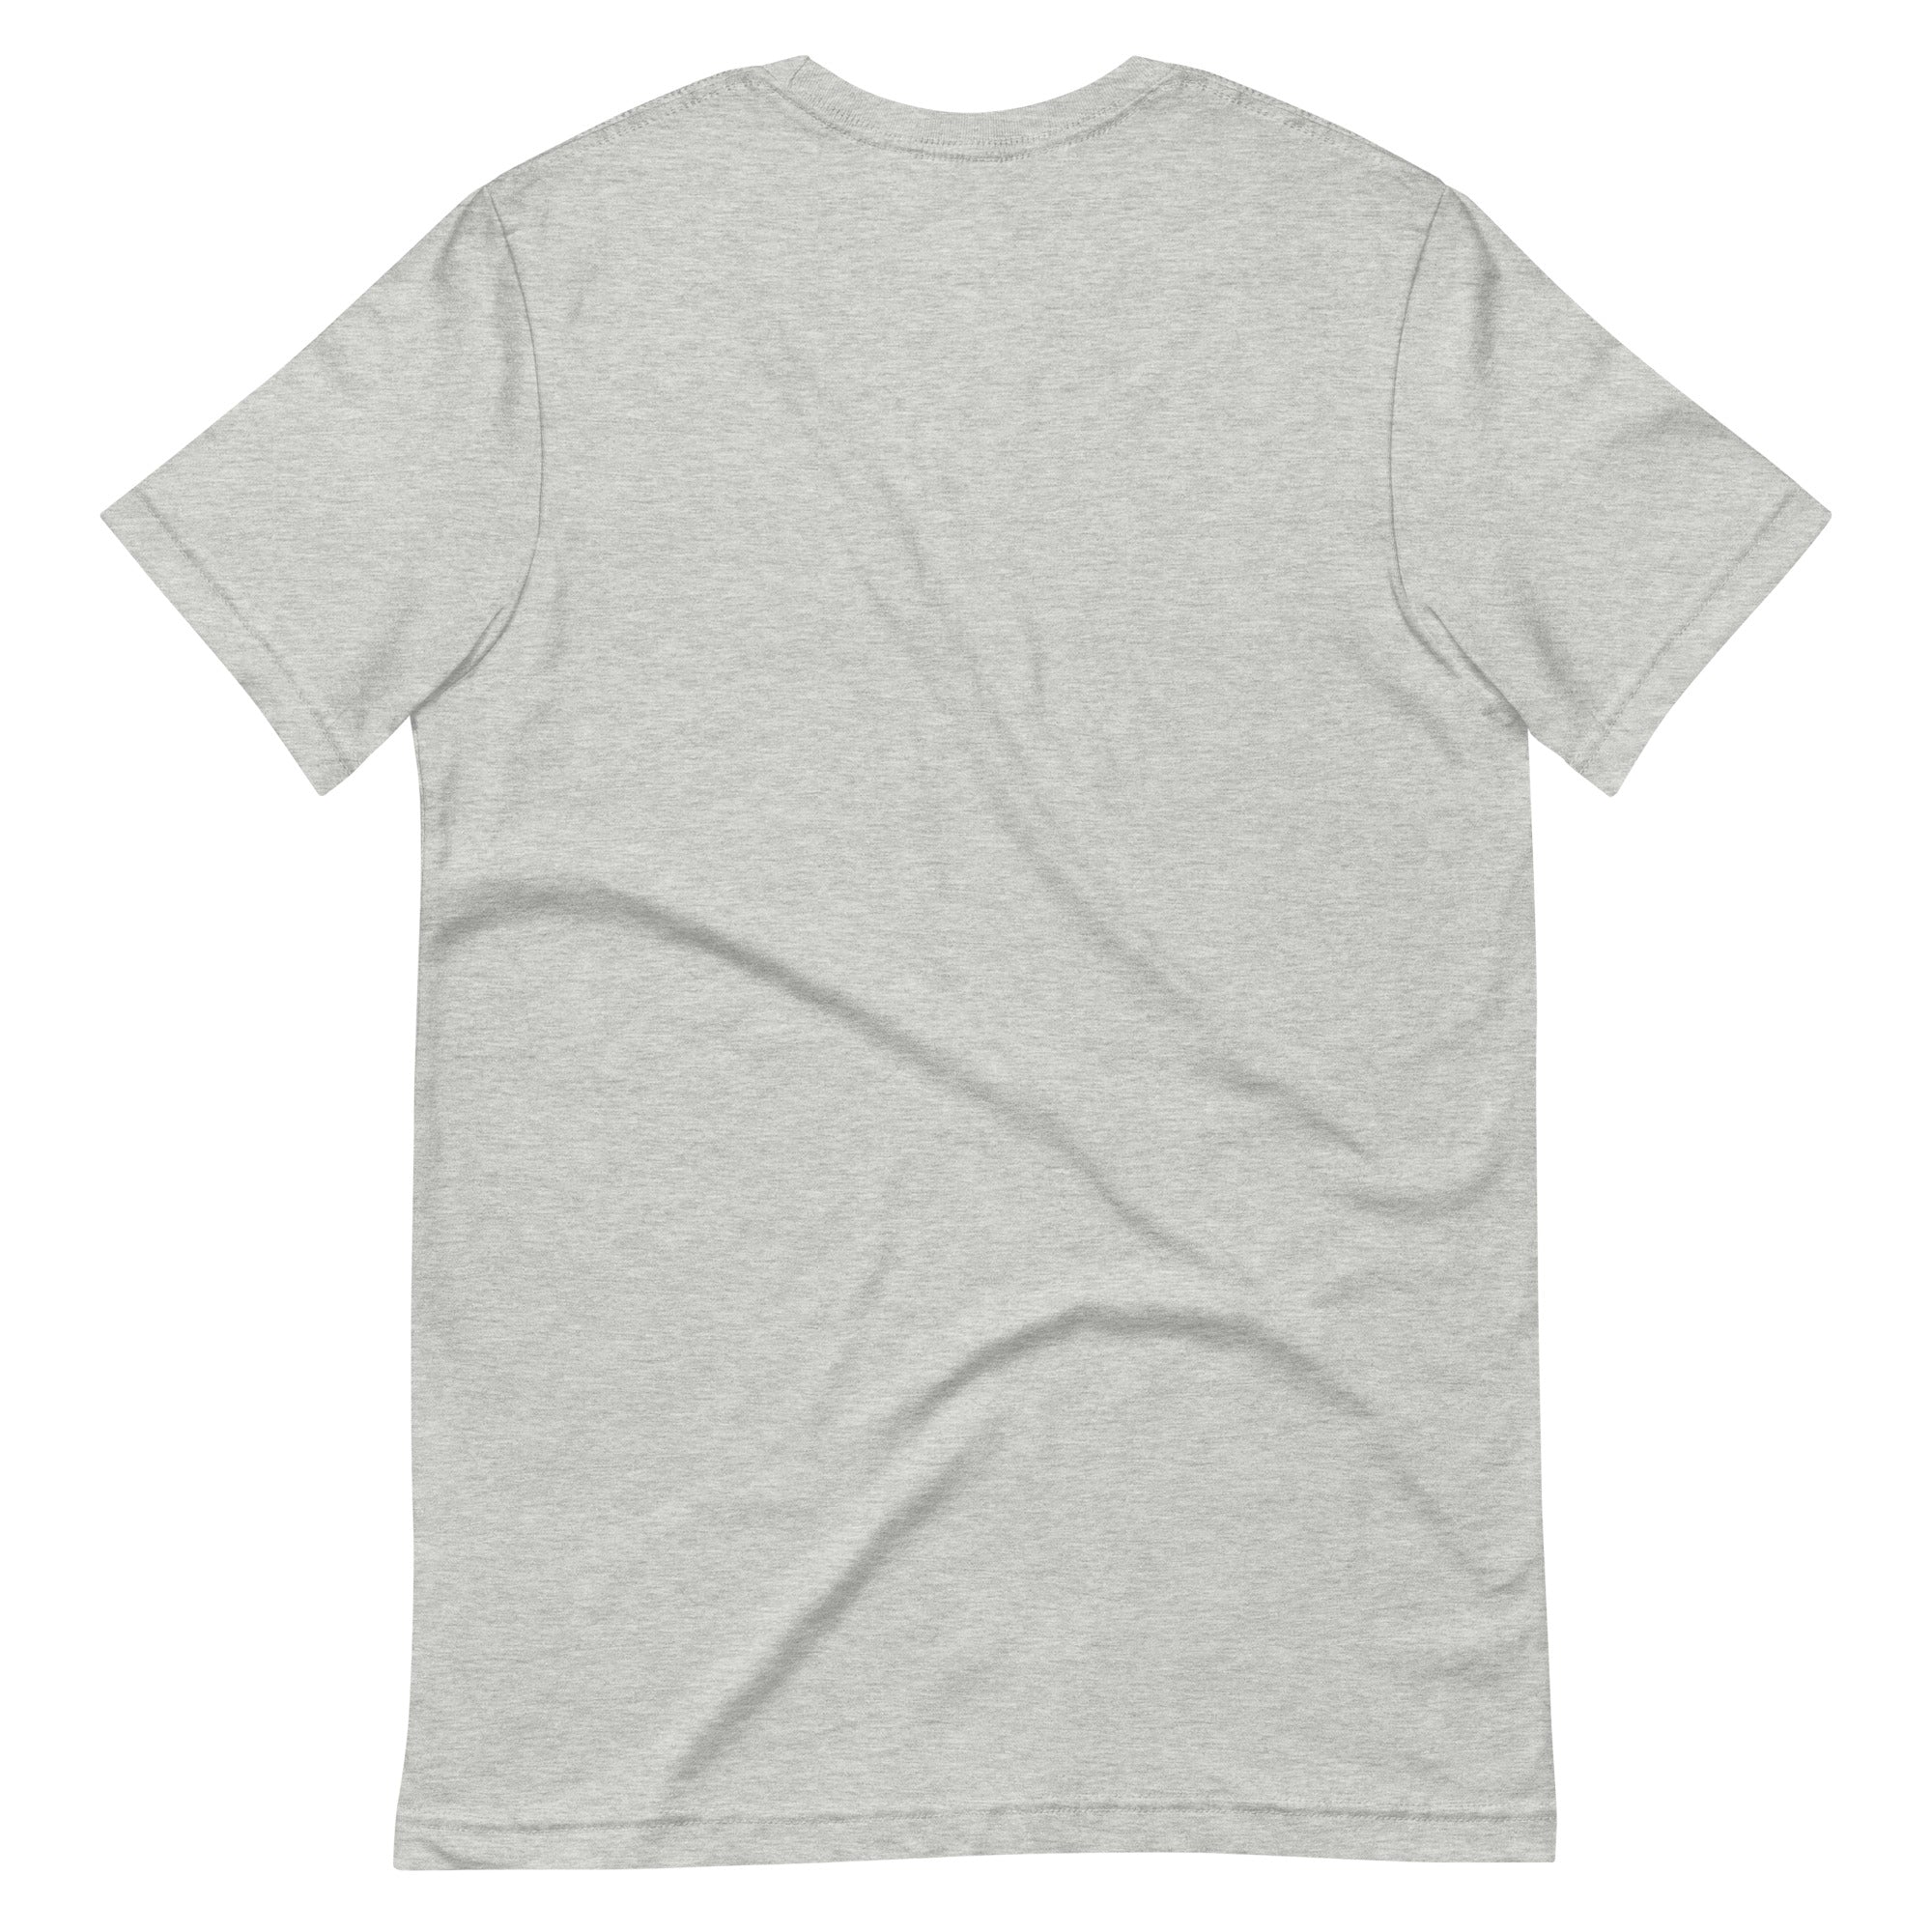 Arches T-Shirt (Grey) - Ballard | Seattle, WA